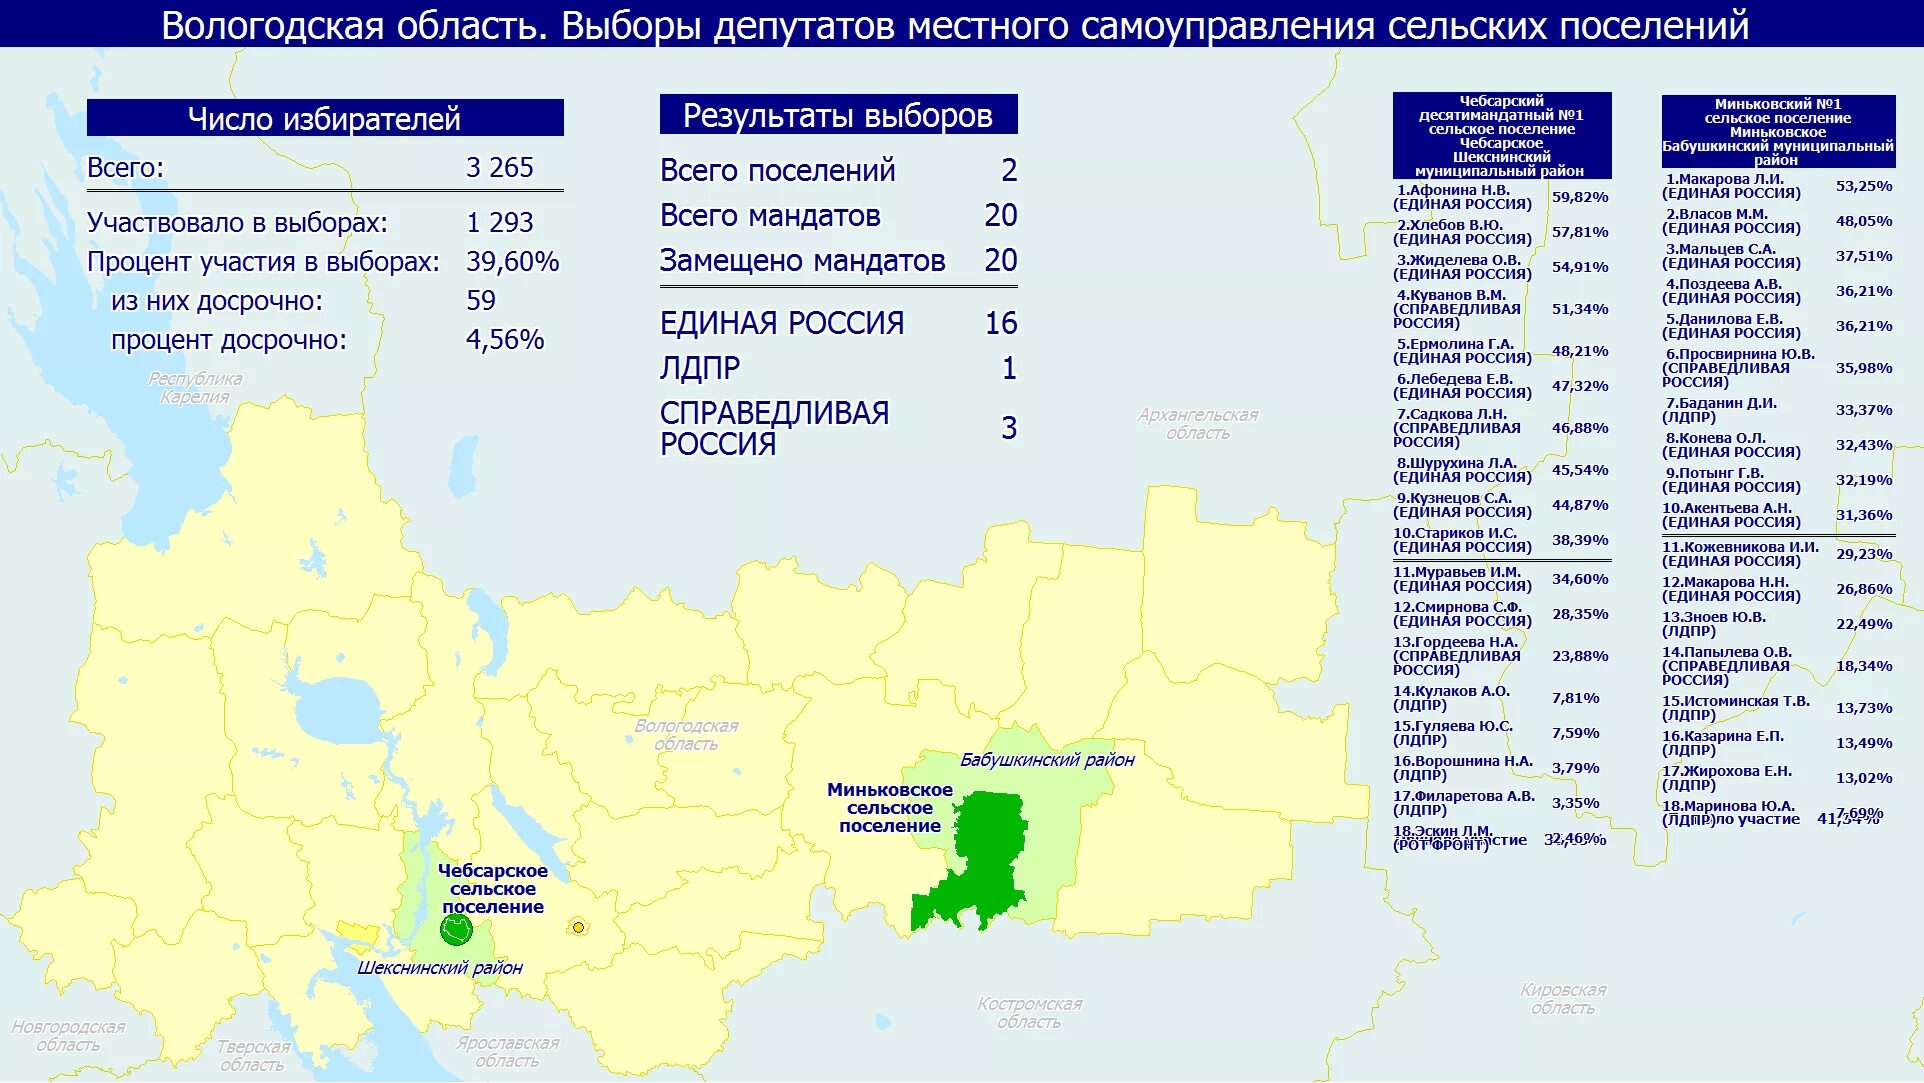 Предварительные результаты выборов в россии сегодня